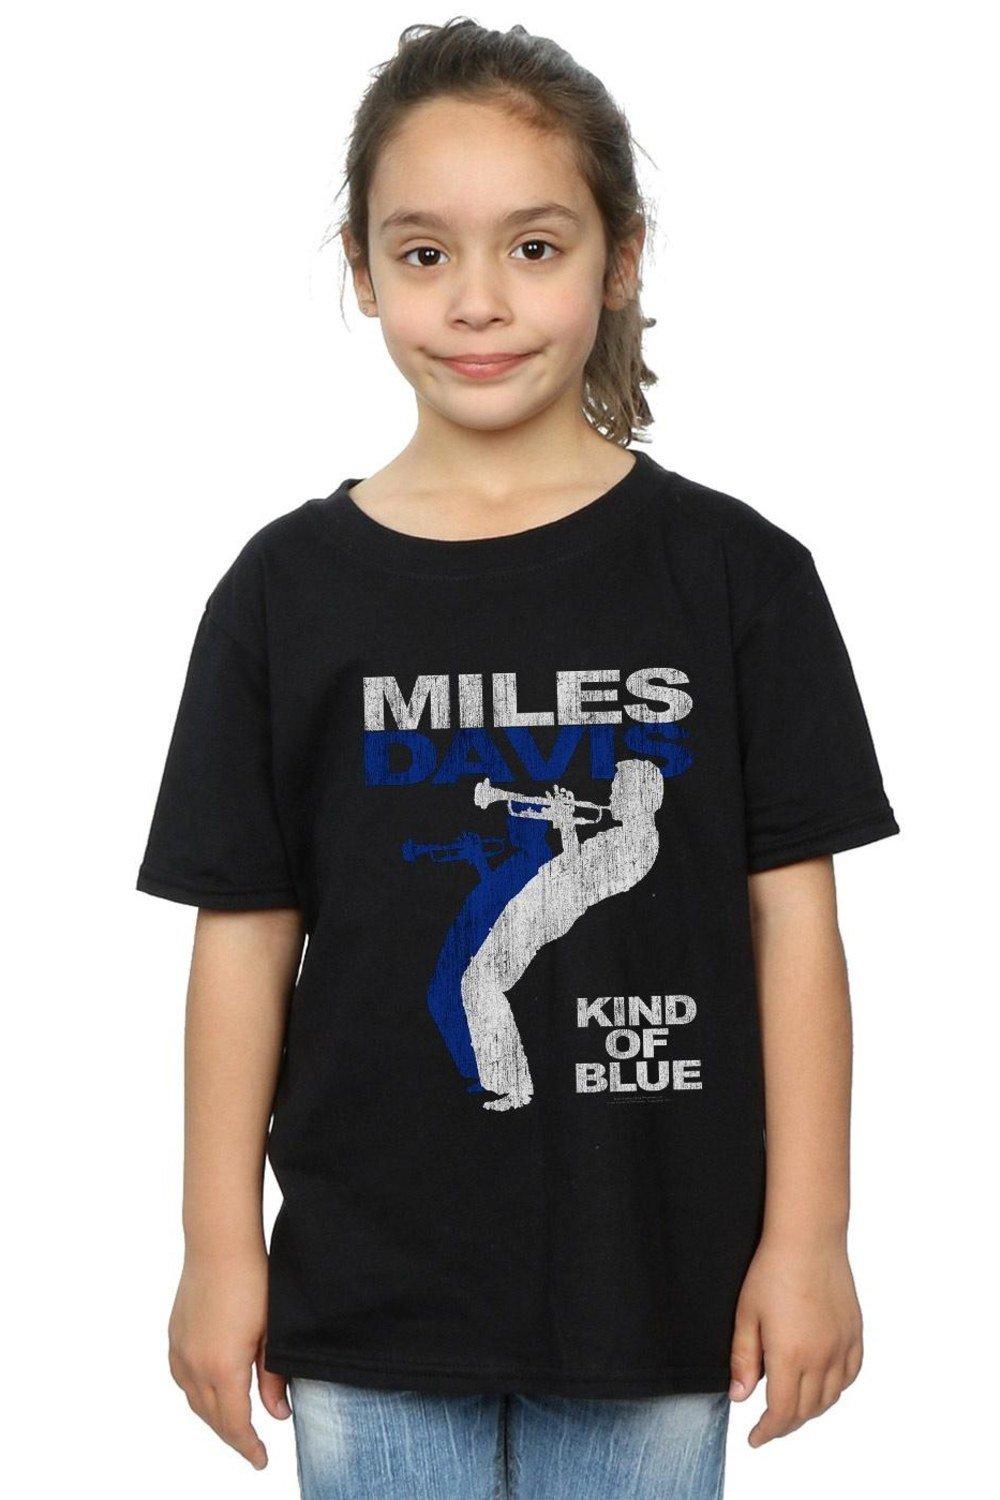 Хлопковая футболка Kind Of Blue с потертостями Miles Davis, черный davis miles kind of blue coloured vinyl lp спрей для очистки lp с микрофиброй 250мл набор